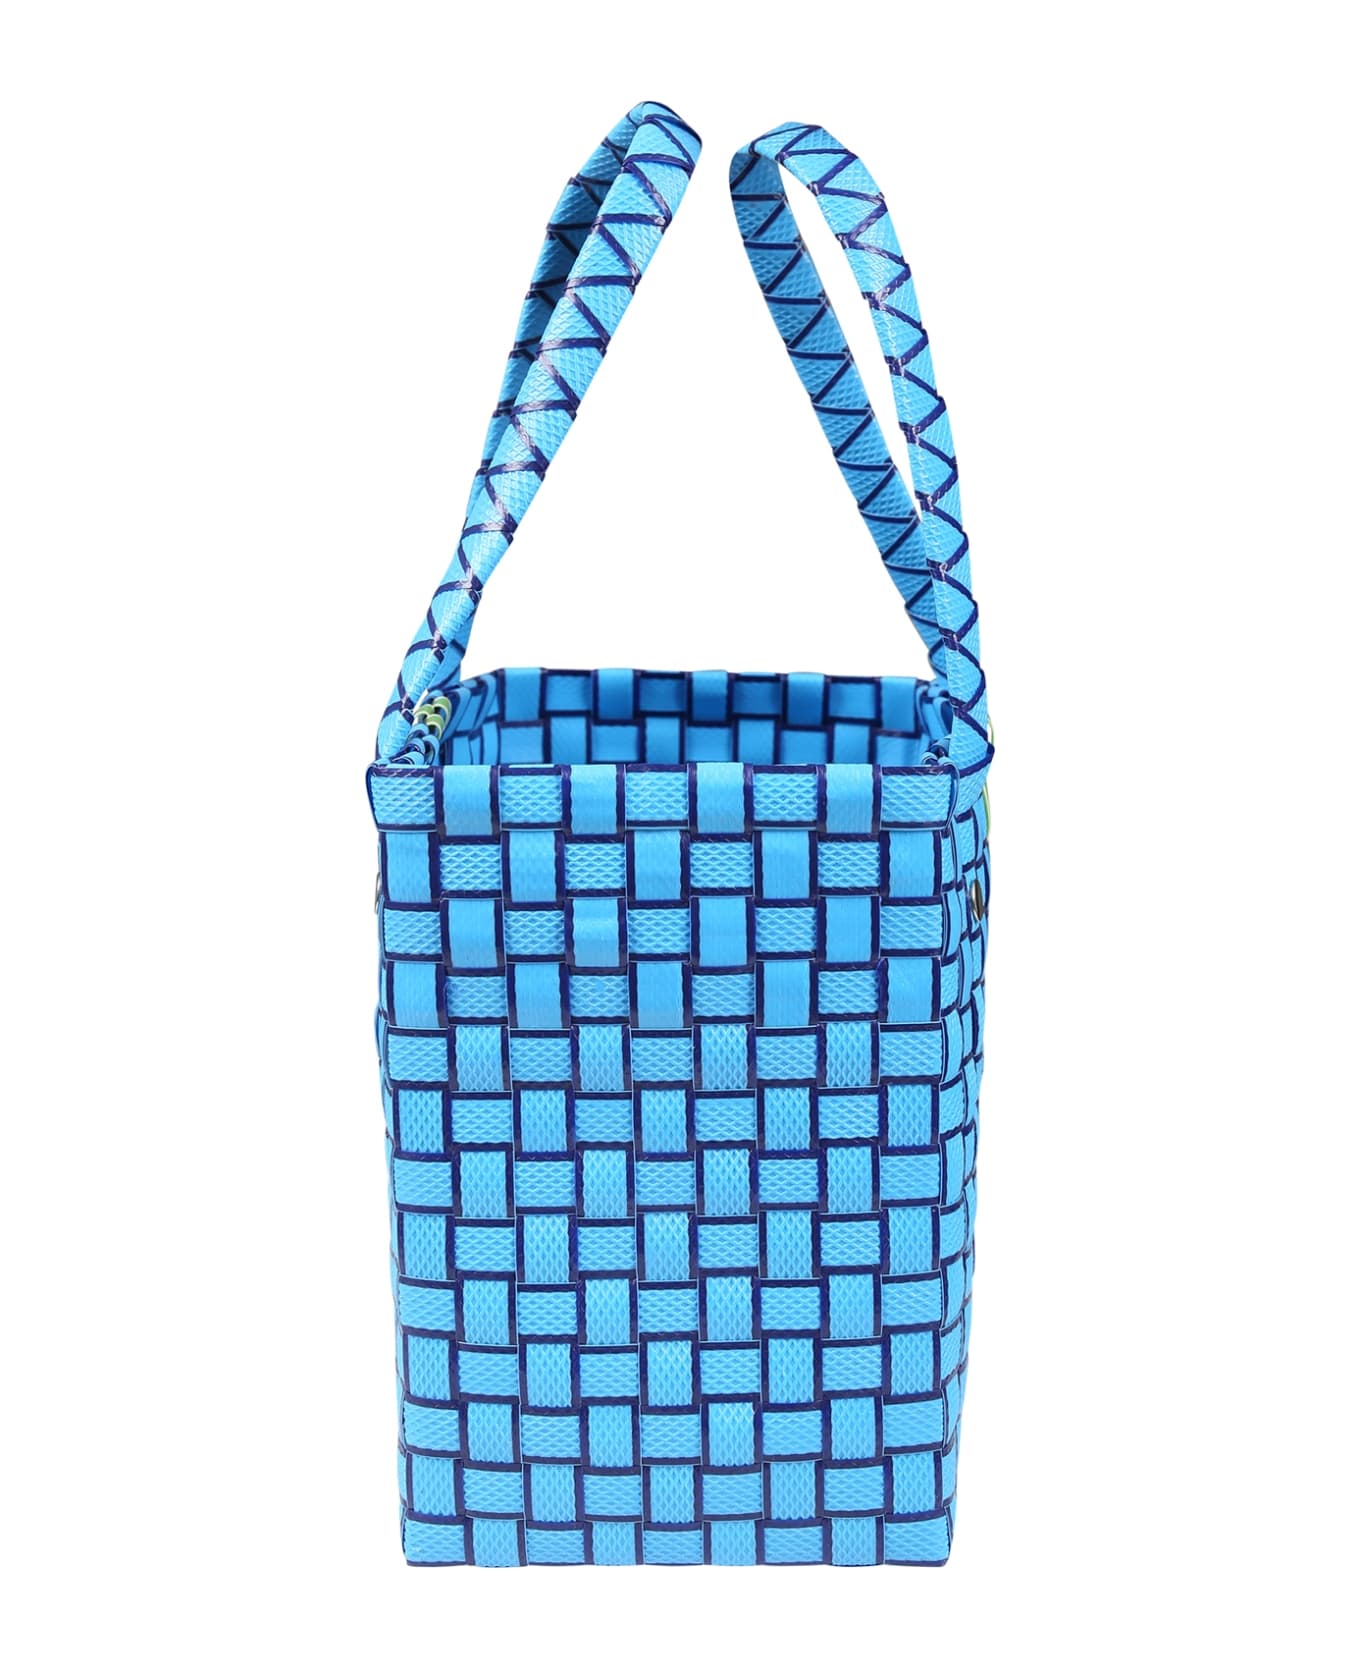 Marni Light Blue Bag For Girl With Logo - Light Blue